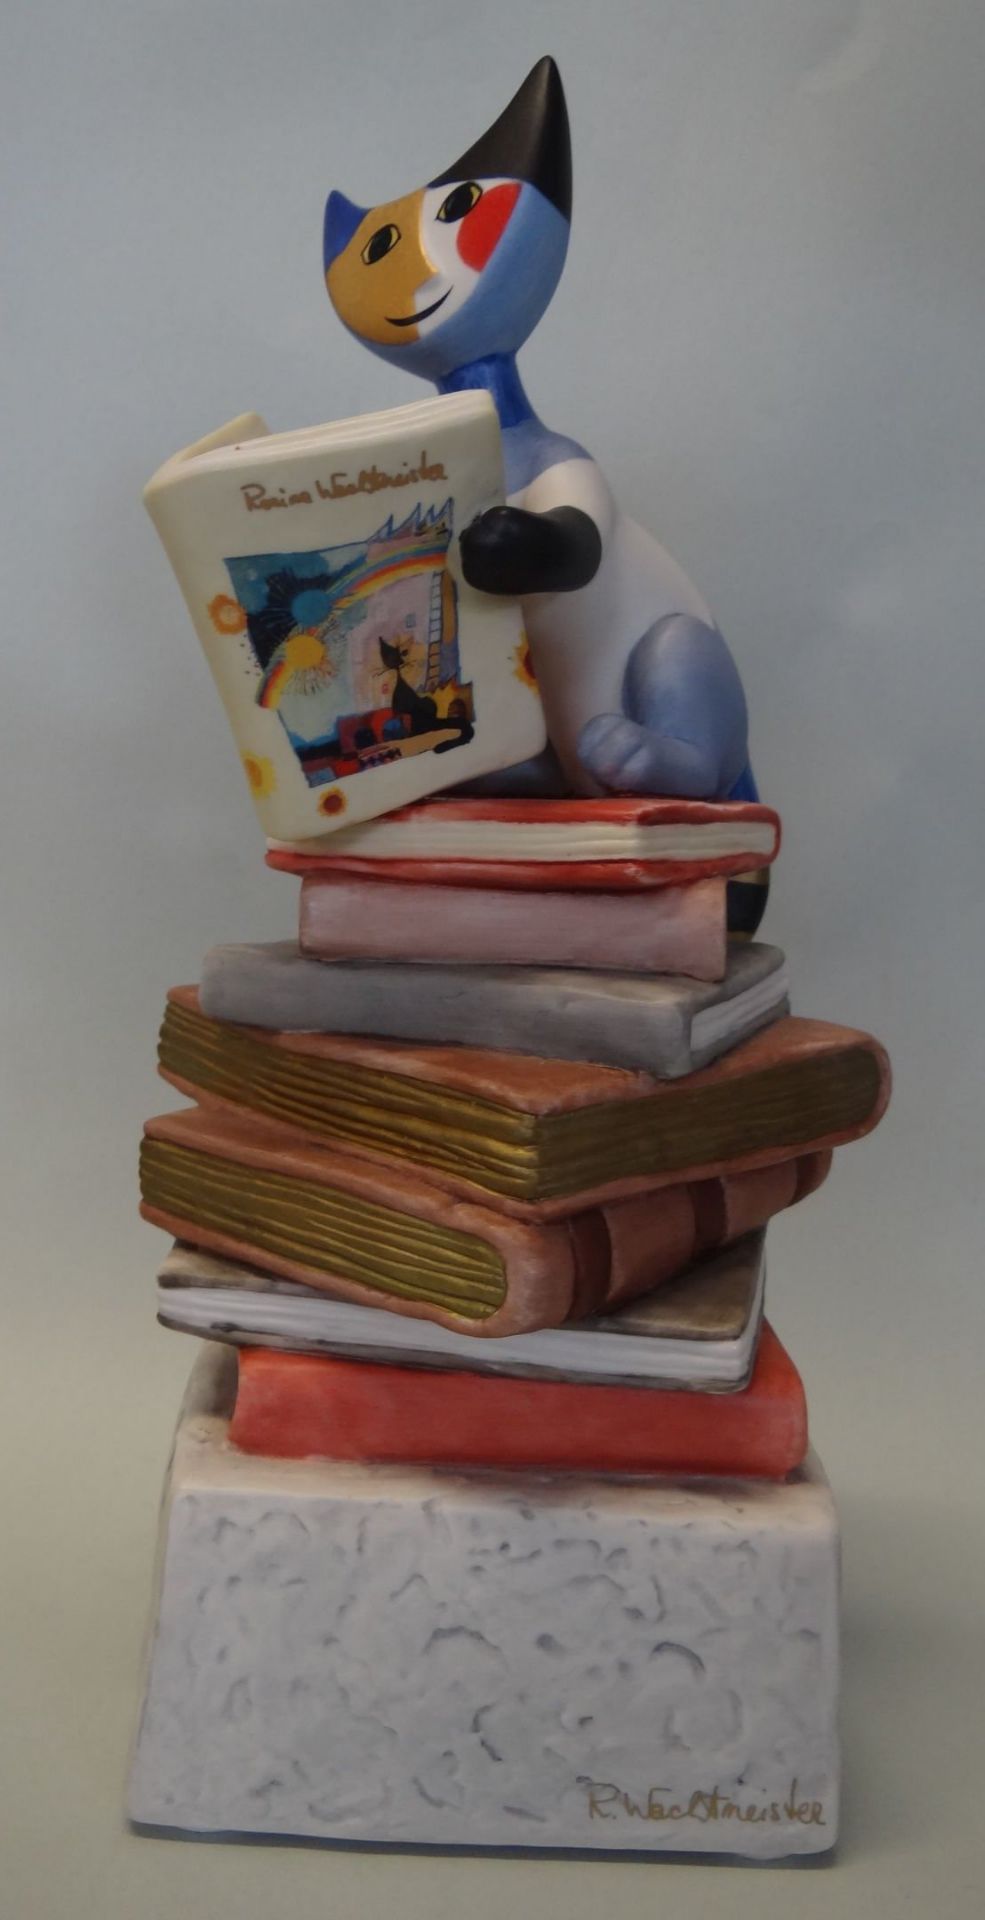 gr. Goebel-Katze auf Bücher, Spieluhr von Goebel nach R.Wachtmeister, H-23 c